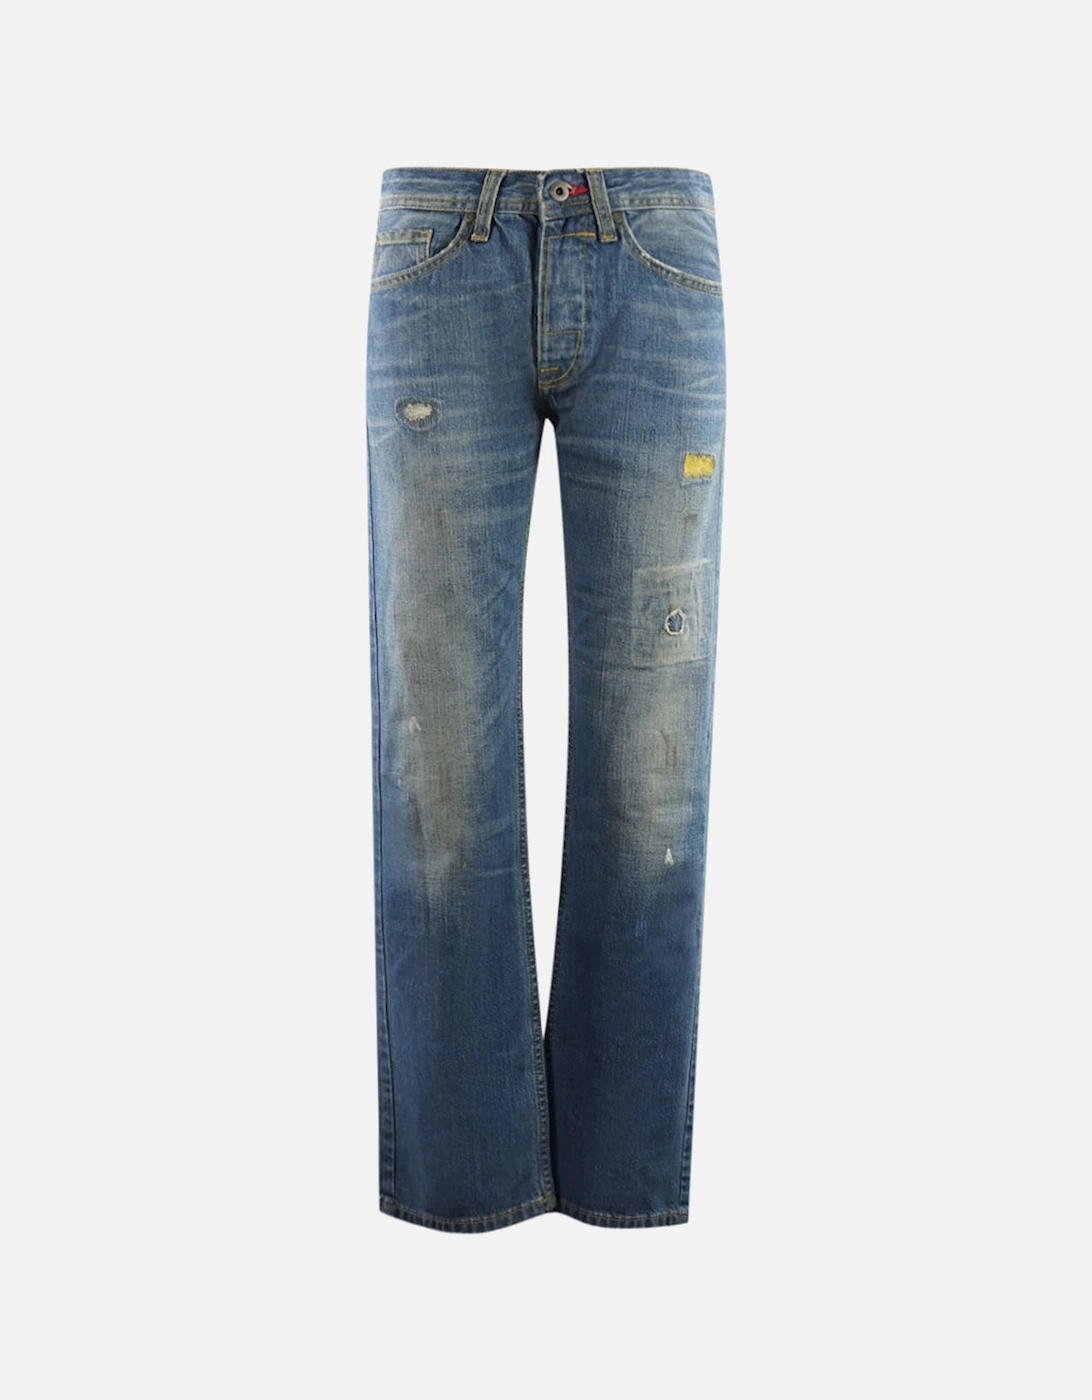 Parkye 55605 Jeans, 4 of 3